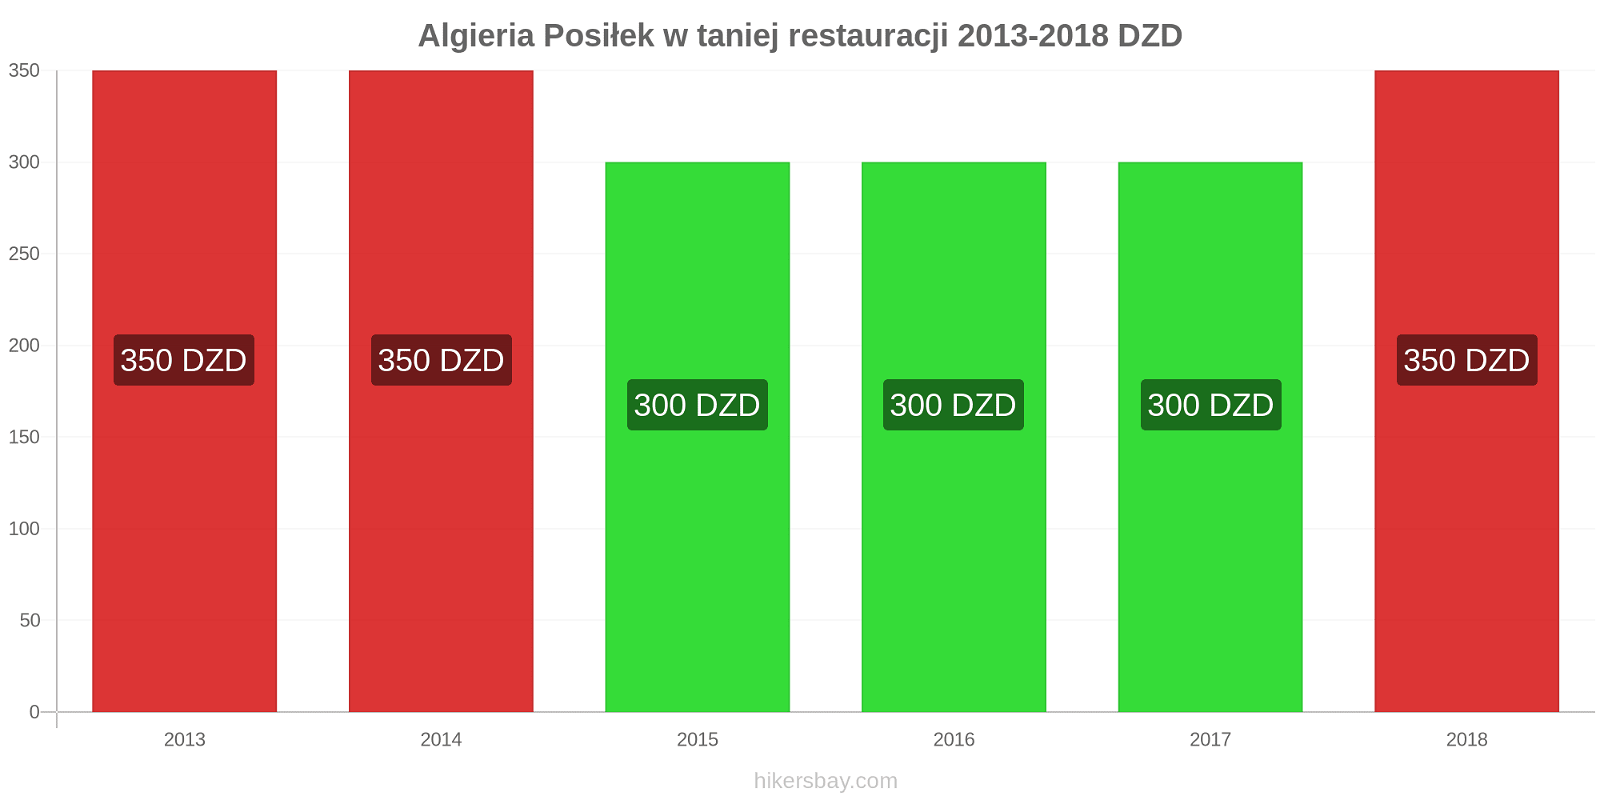 Algieria zmiany cen Posiłek w taniej restauracji hikersbay.com